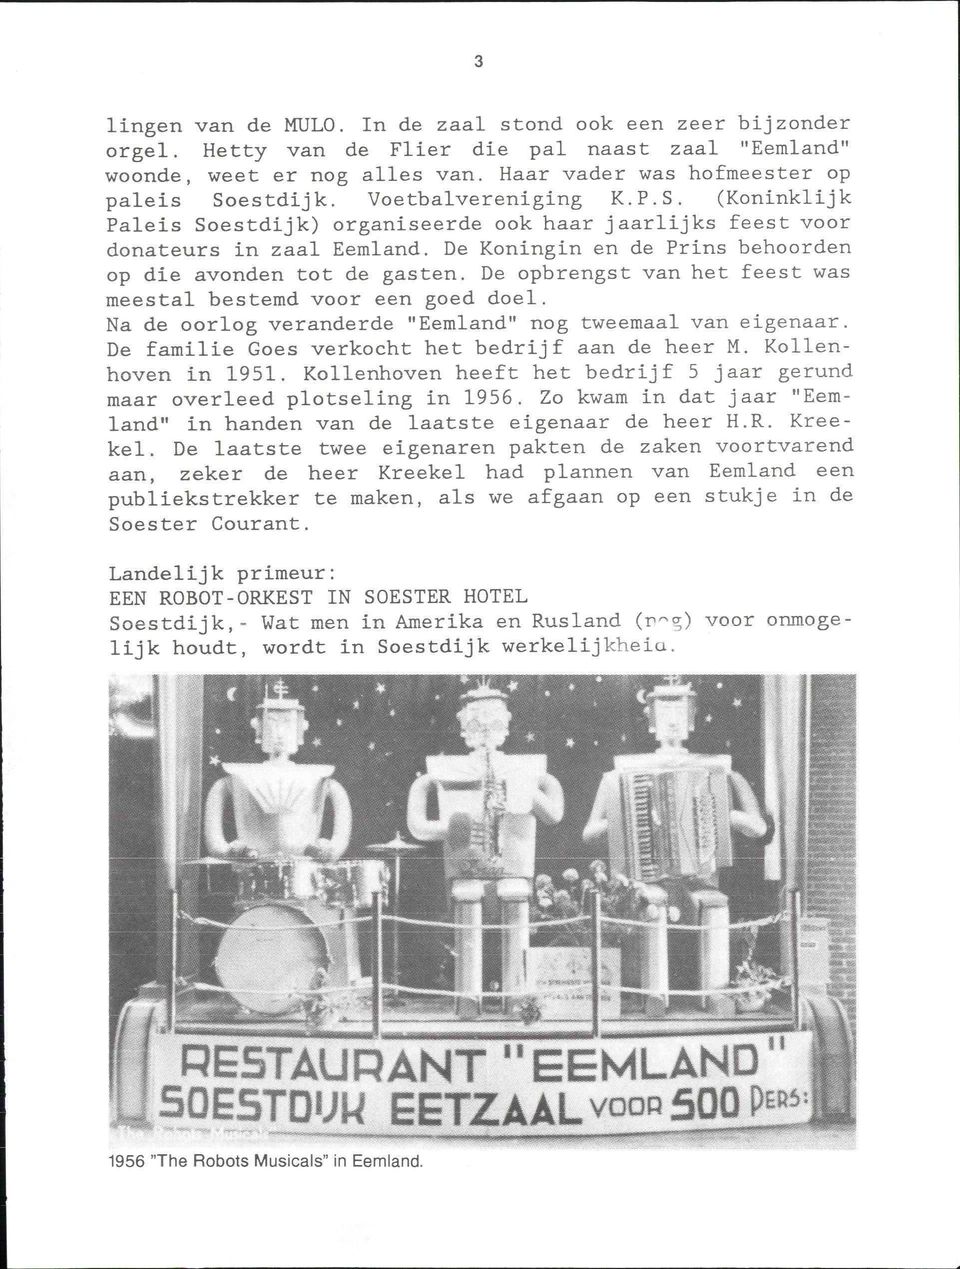 De opbrengst van het feest was meestal bestemd voor een goed doel. Na de oorlog veranderde "Eemland" nog tweemaal van eigenaar. De familie Goes verkocht het bedrijf aan de heer M. Kollenhoven in 1951.